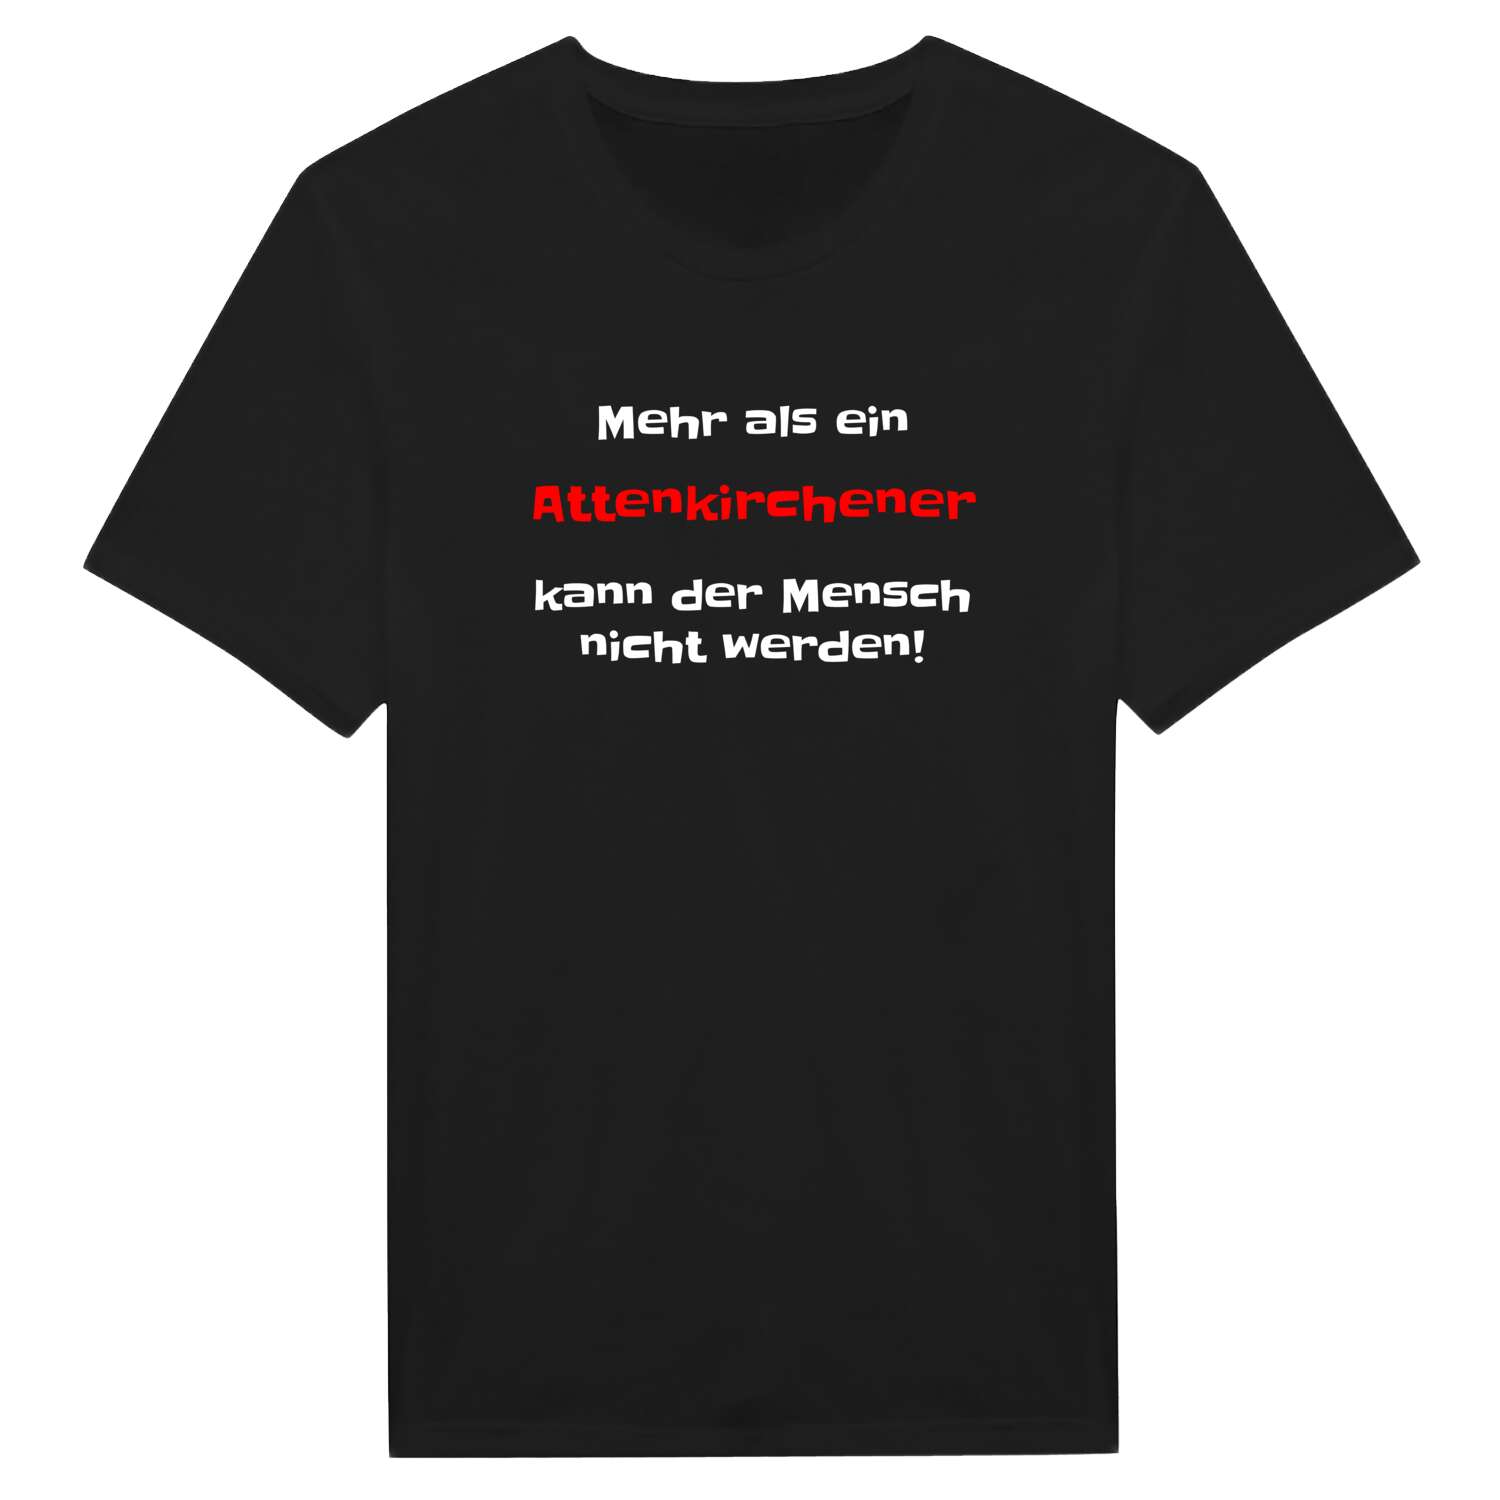 Attenkirchen T-Shirt »Mehr als ein«